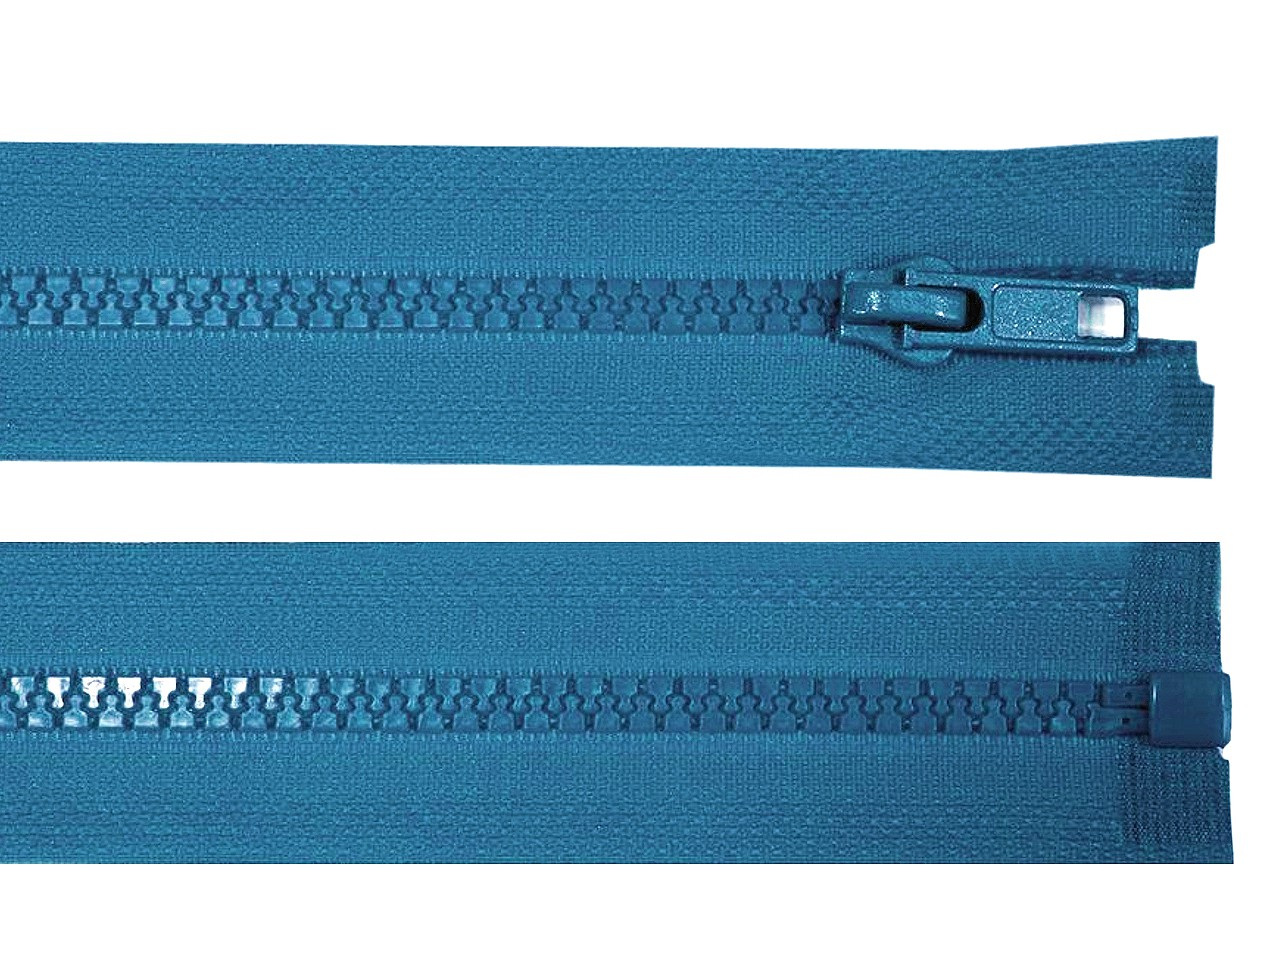 Kostěný zip No 5 délka 70 cm bundový, barva 216 modrá sytá